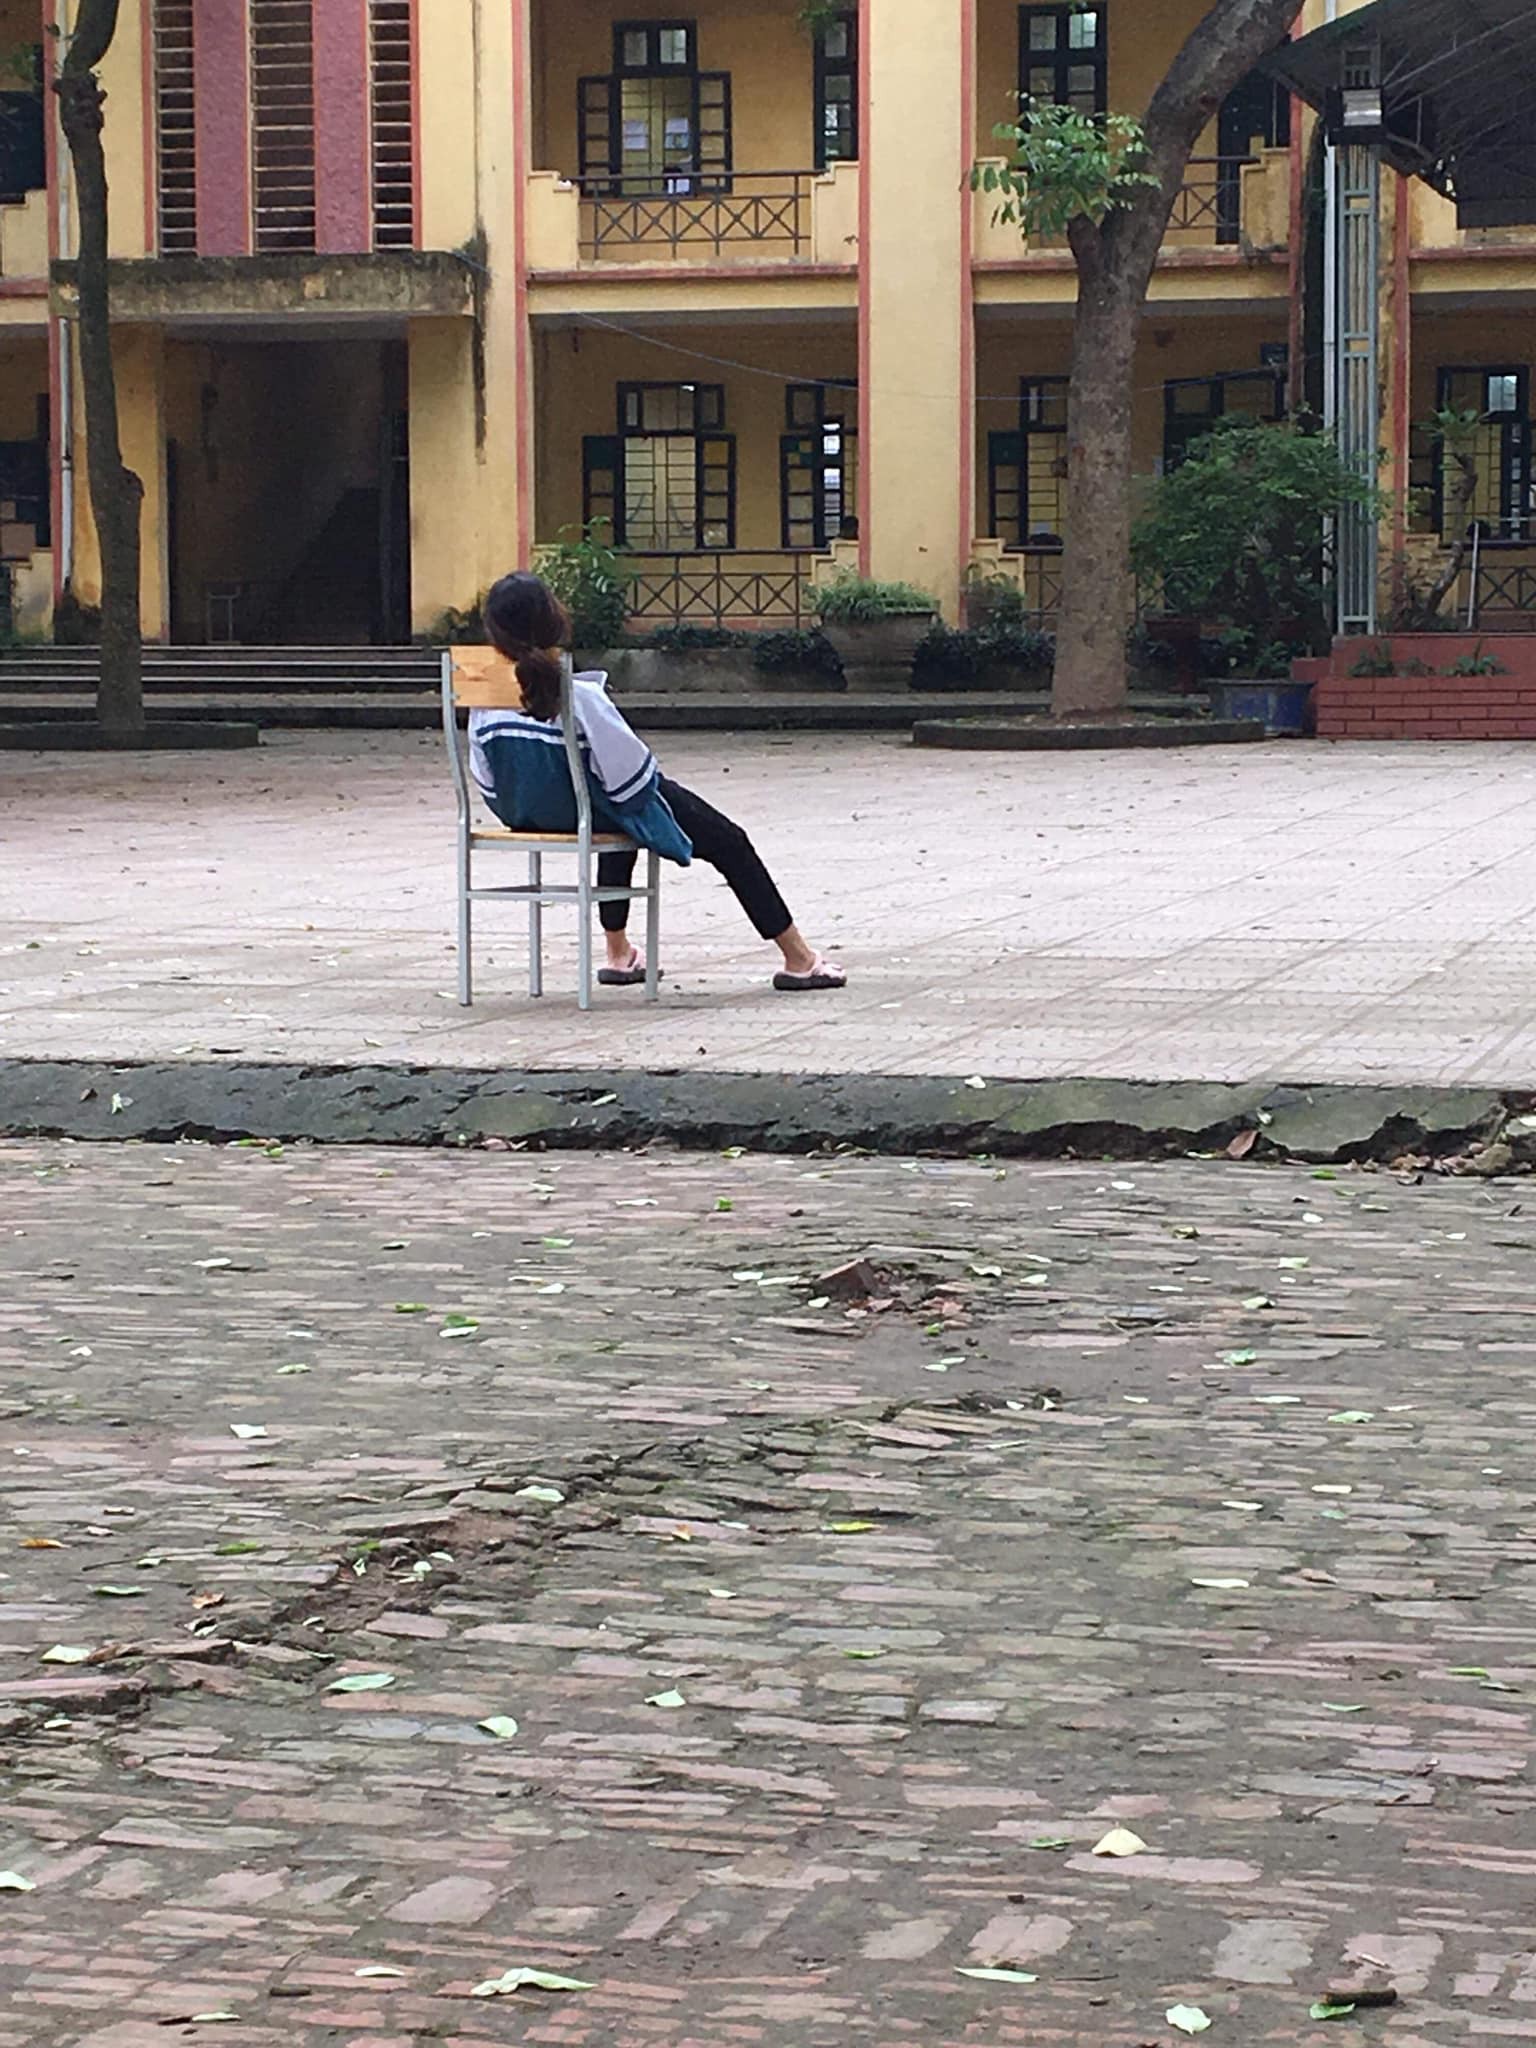 Tấm ảnh nữ sinh ngồi vật vã giữa sân trường: Em mệt rồi, đừng bắt em học nữa khiến cộng đồng mạng xót xa-1